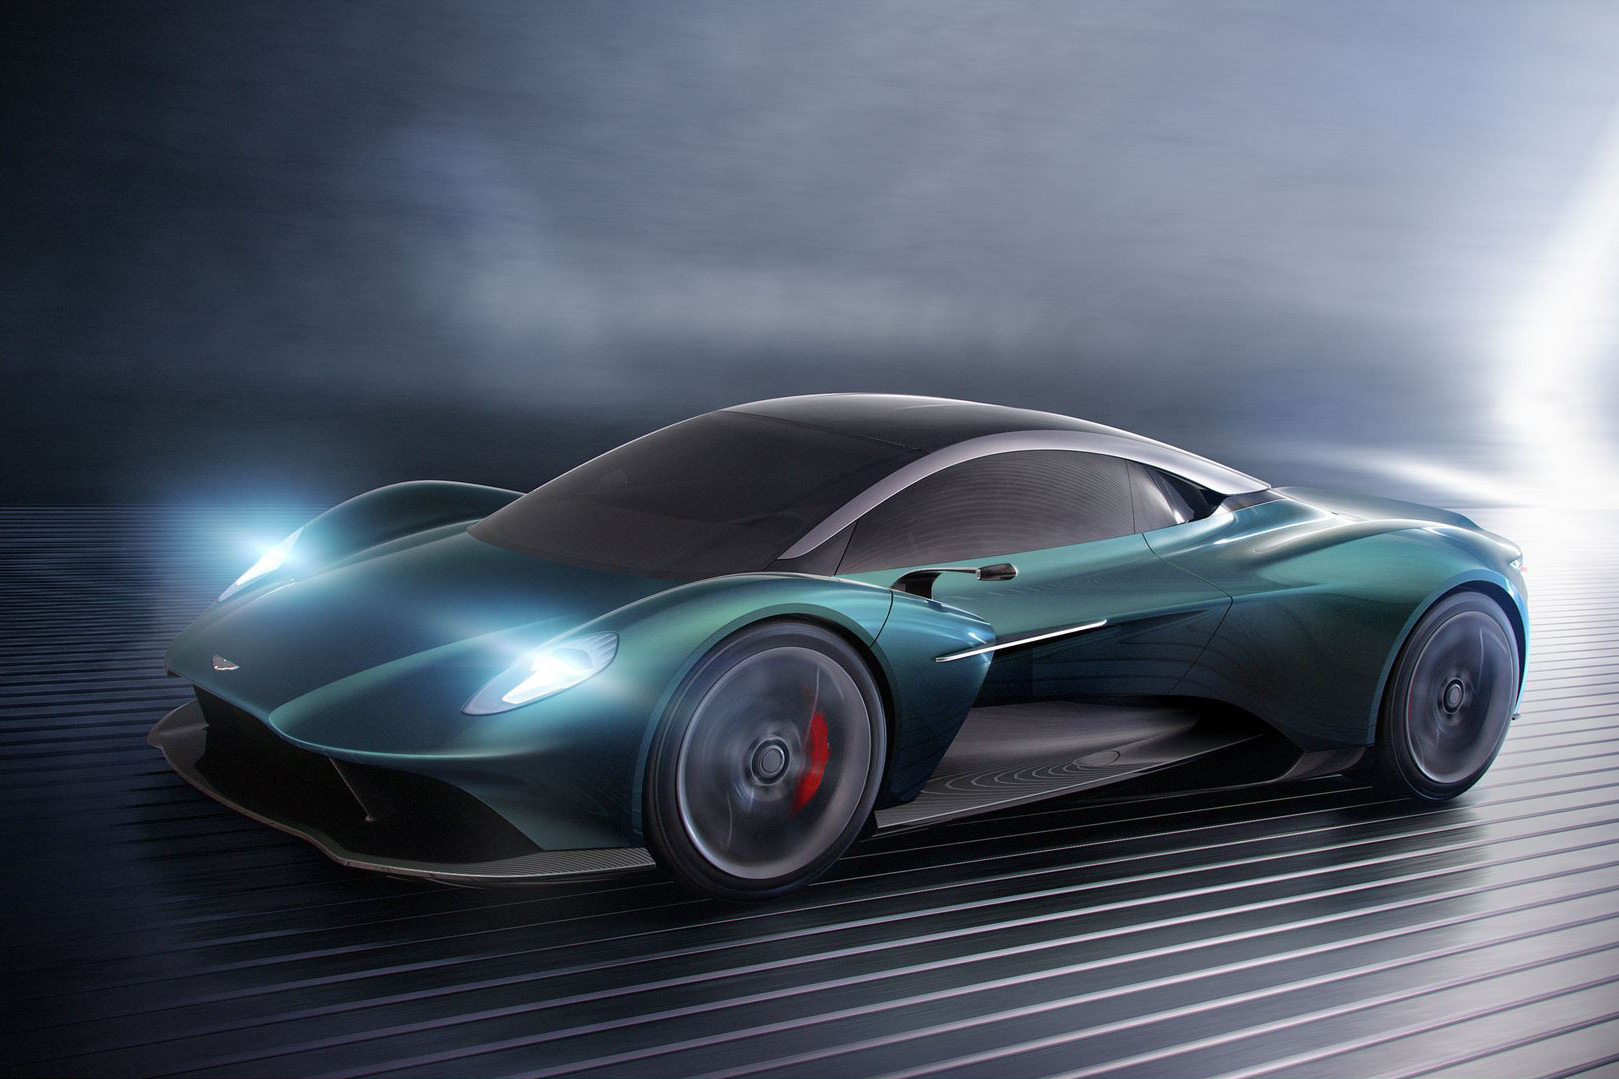 Aston Martin sẽ sớm có siêu xe ‘giá rẻ’ mới ra mắt ngay năm sau, đấu McLaren 720S